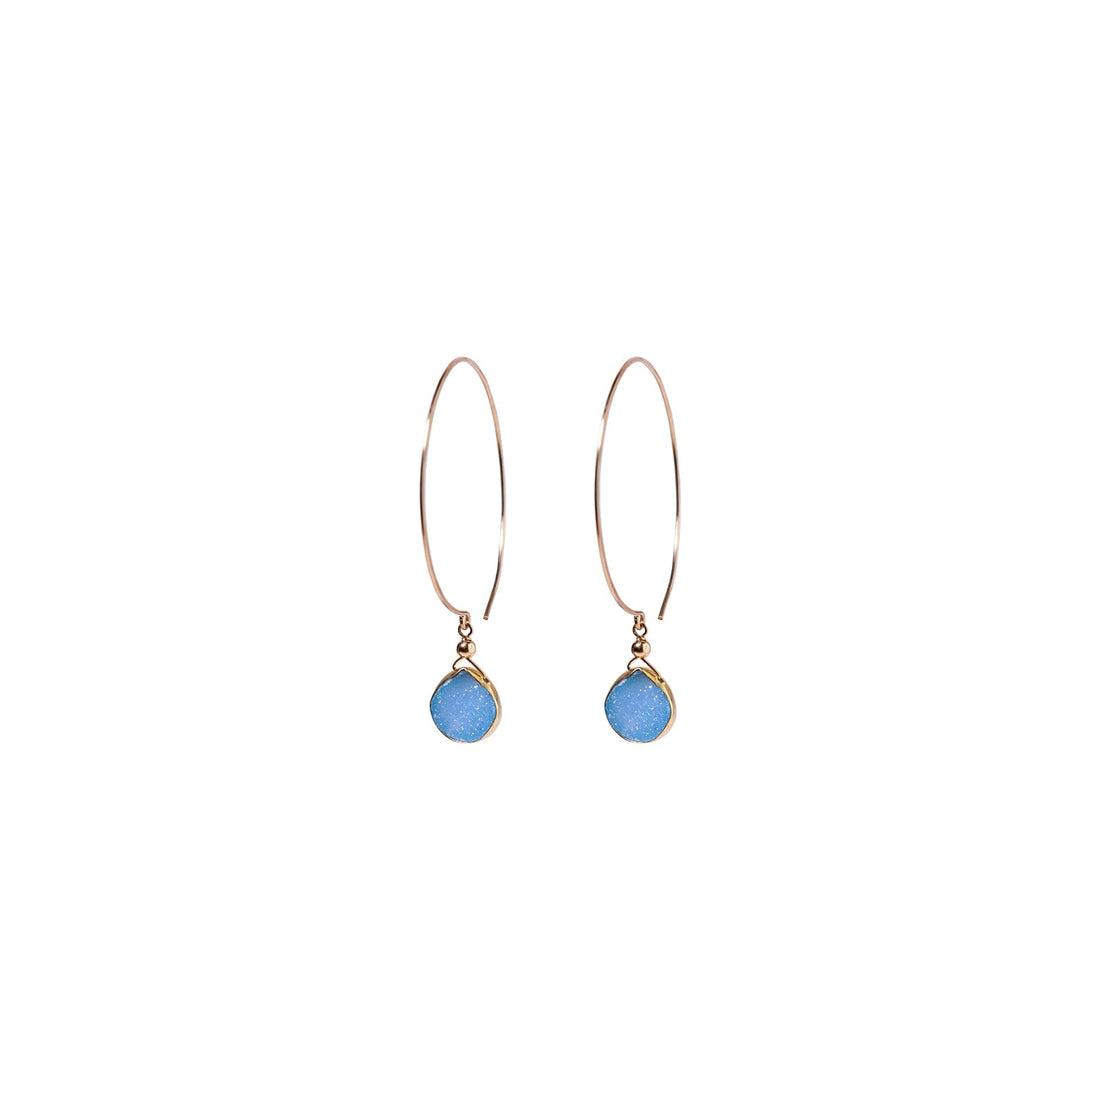 Kelly Earrings, Blue Druzy Pear with Classic Gold Bezel Earrings Sayulita Sol 